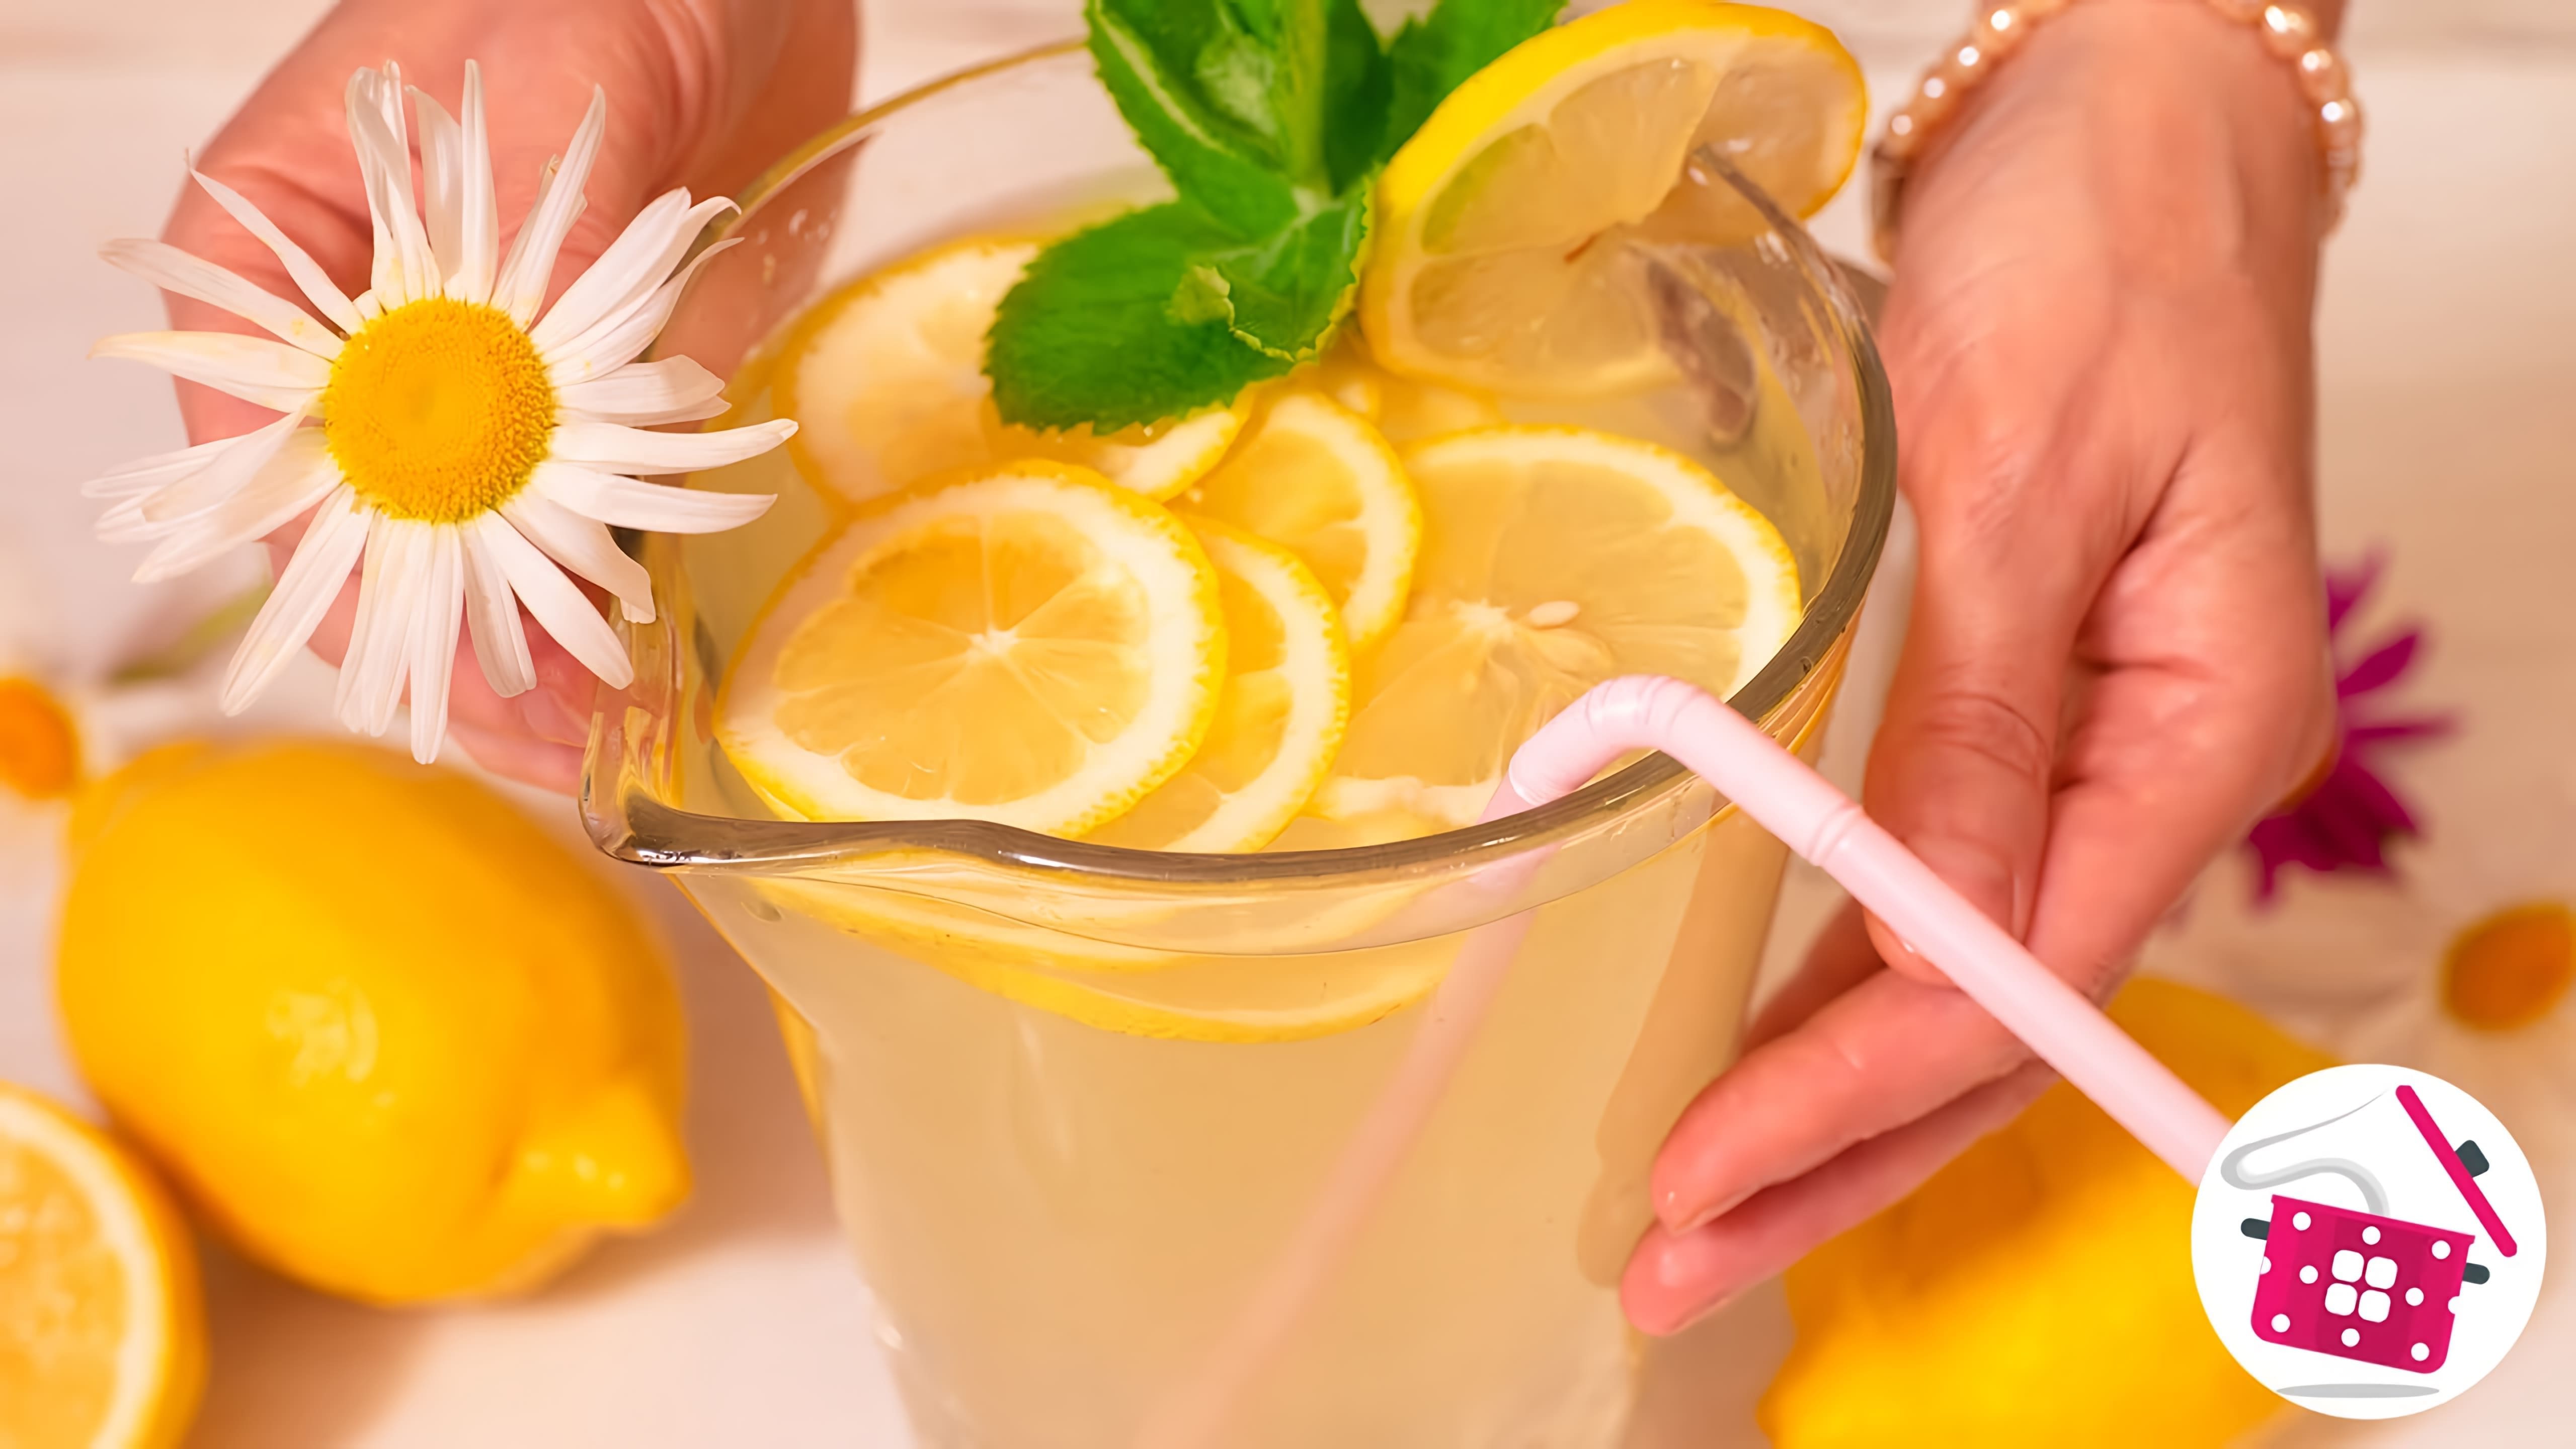 В этом видео демонстрируется простой и быстрый рецепт домашнего лимонада